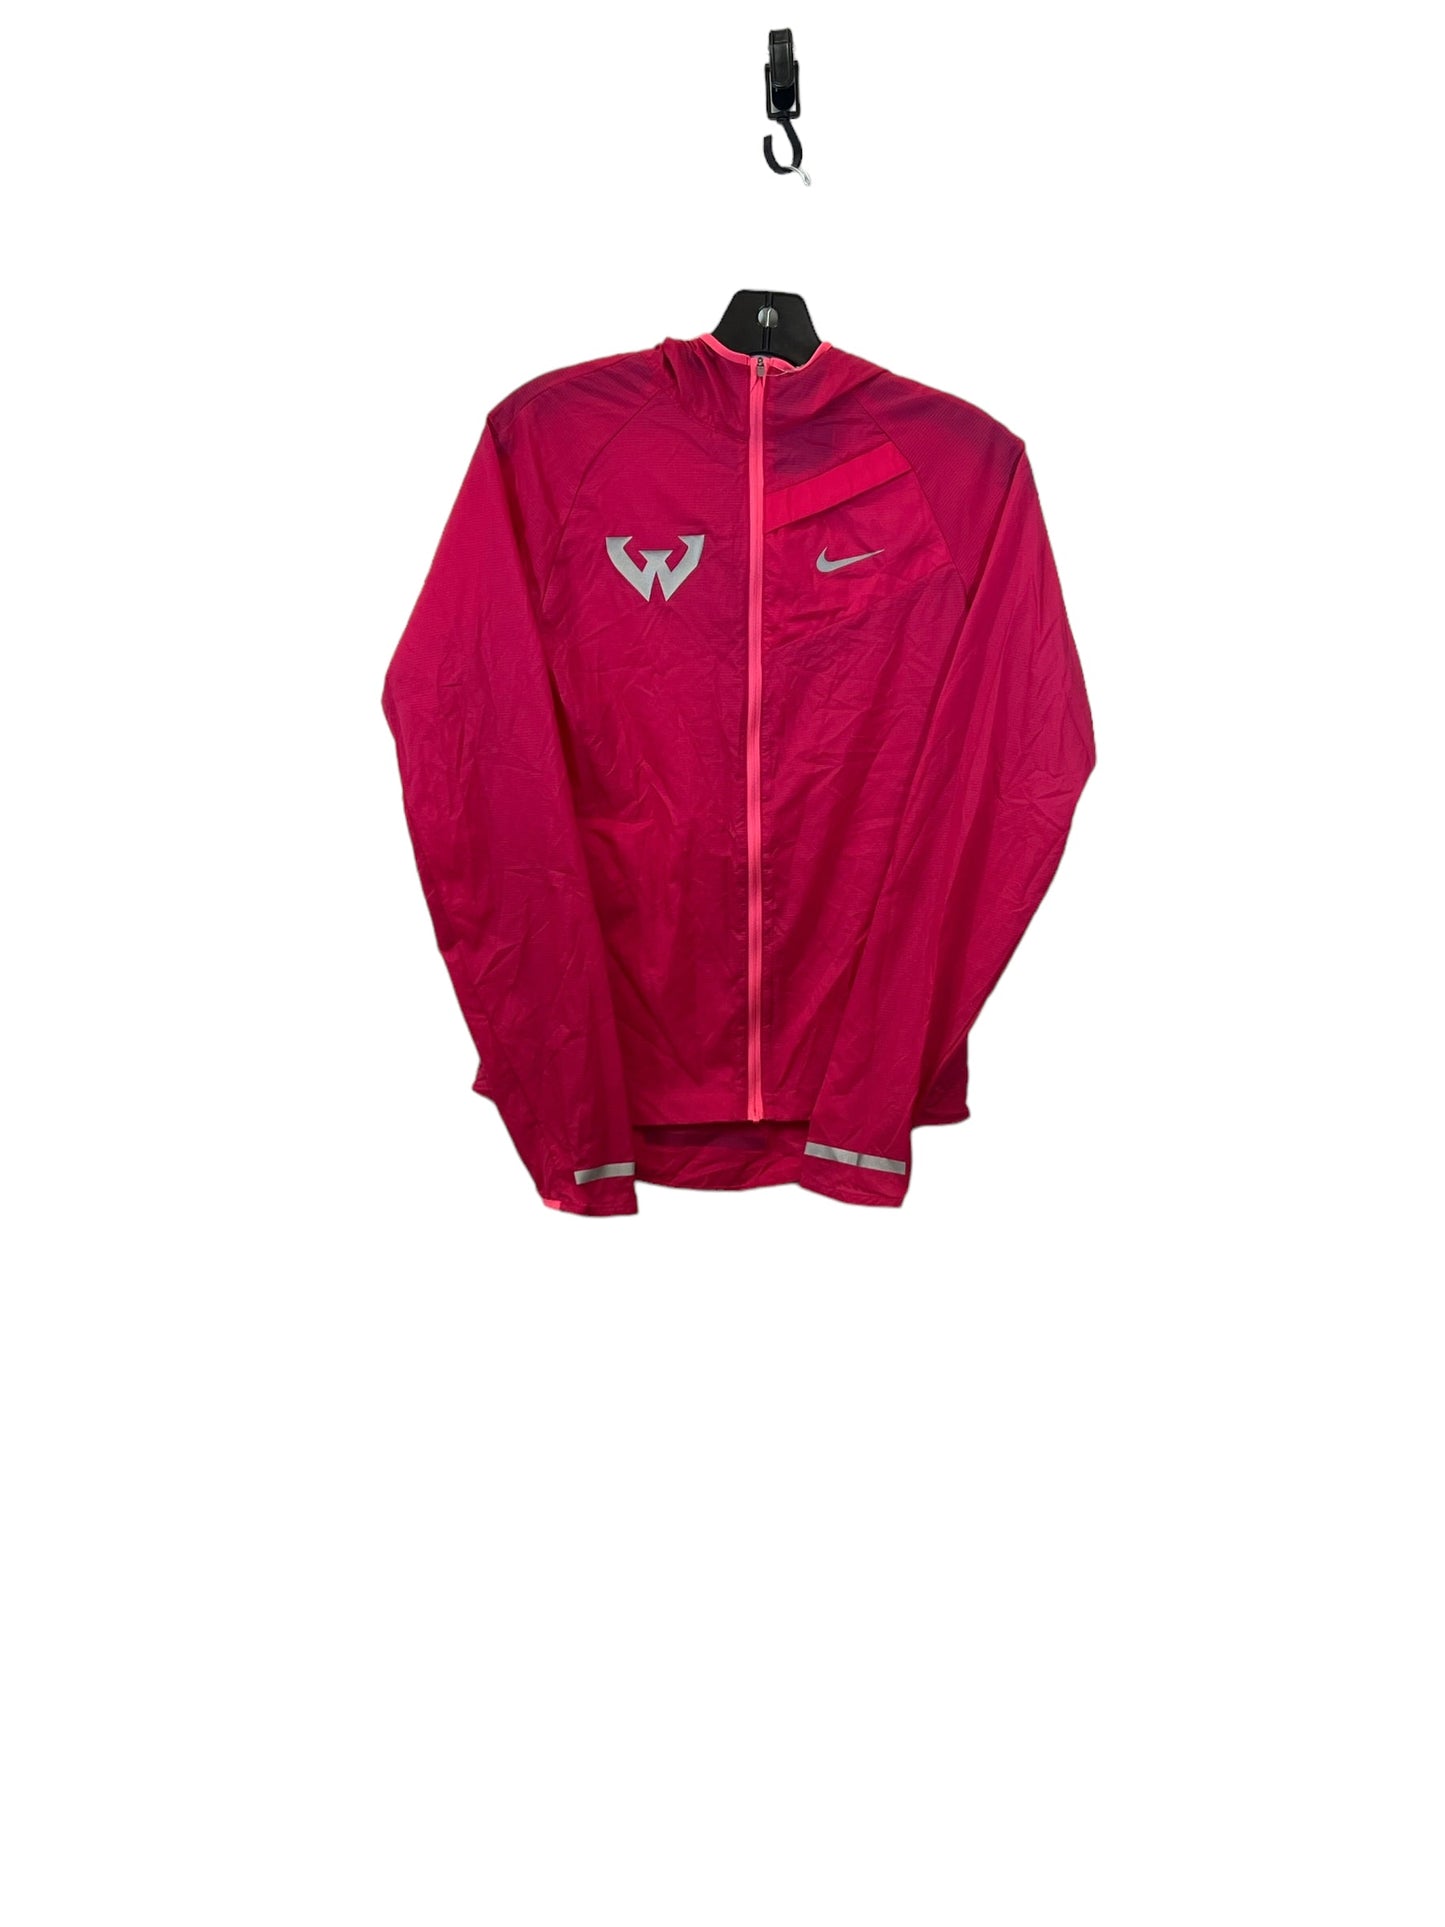 Jacket Windbreaker By Nike  Size: Xs